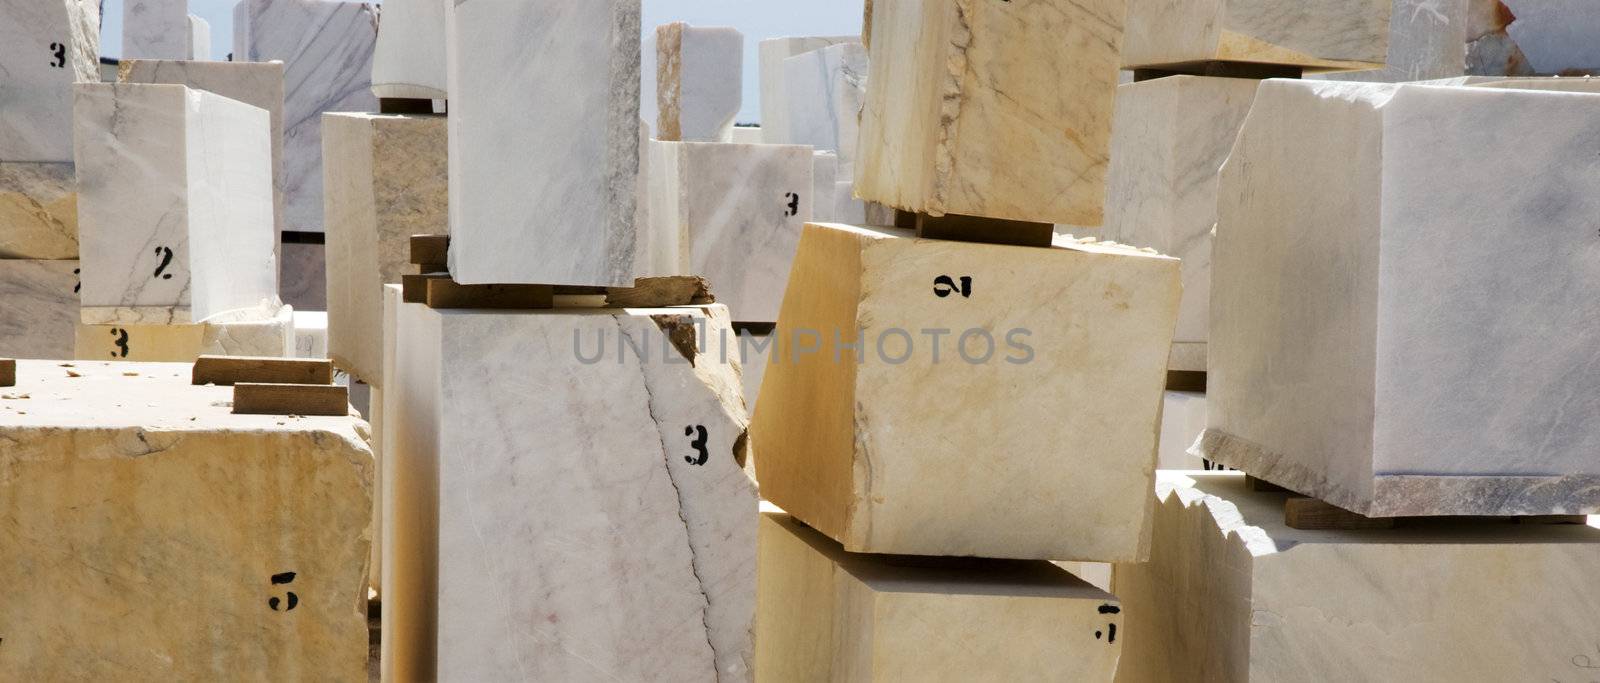 Marble blocks 8 by mrfotos